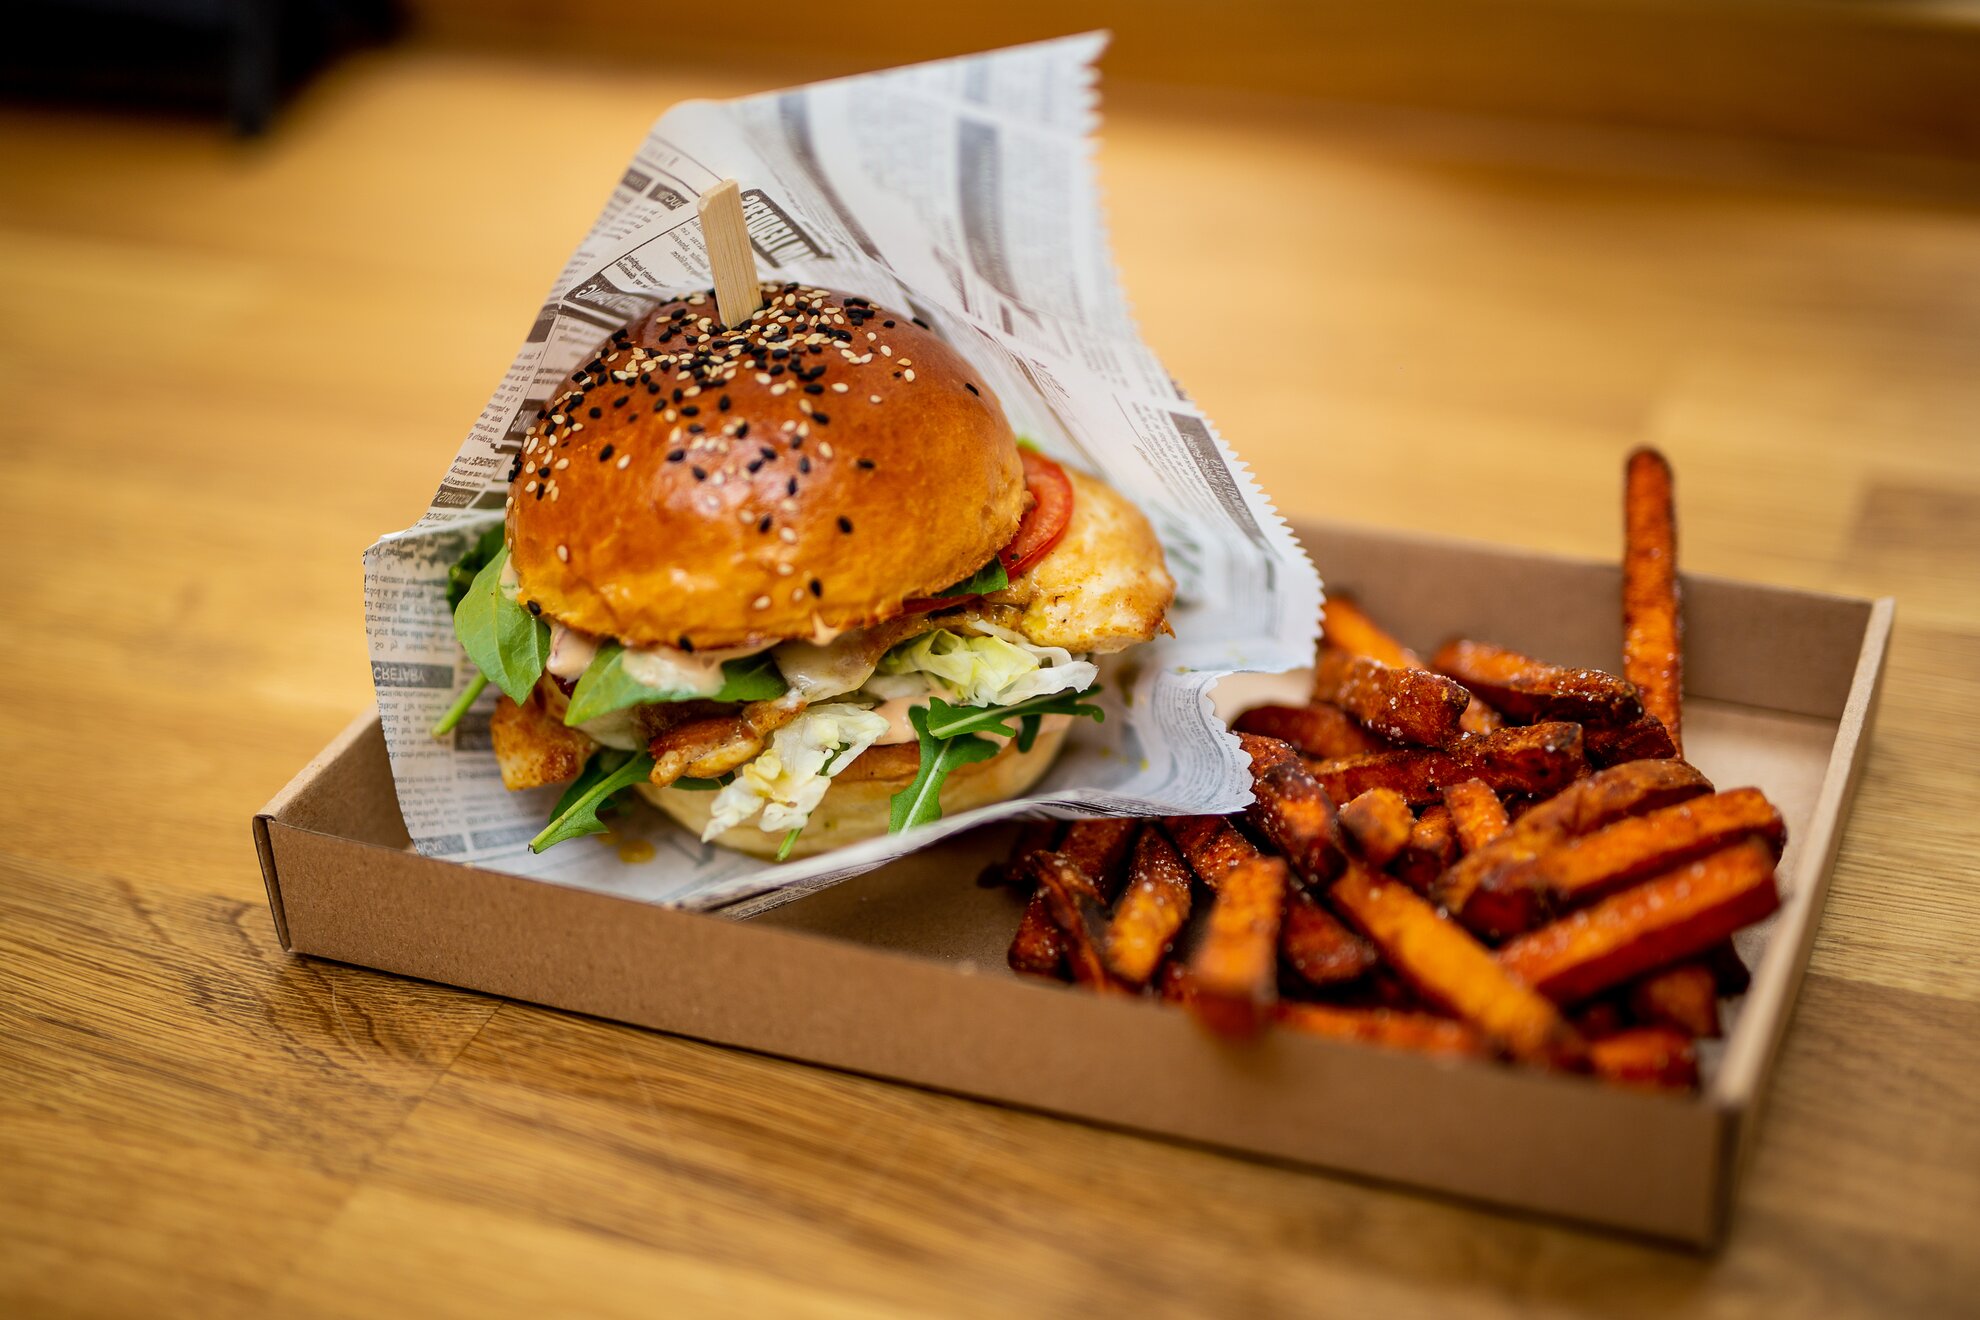 A megbízható sajtburgertől a gourmet-wagyuig – Ezek a főváros legjobb  burgerlelőhelyei